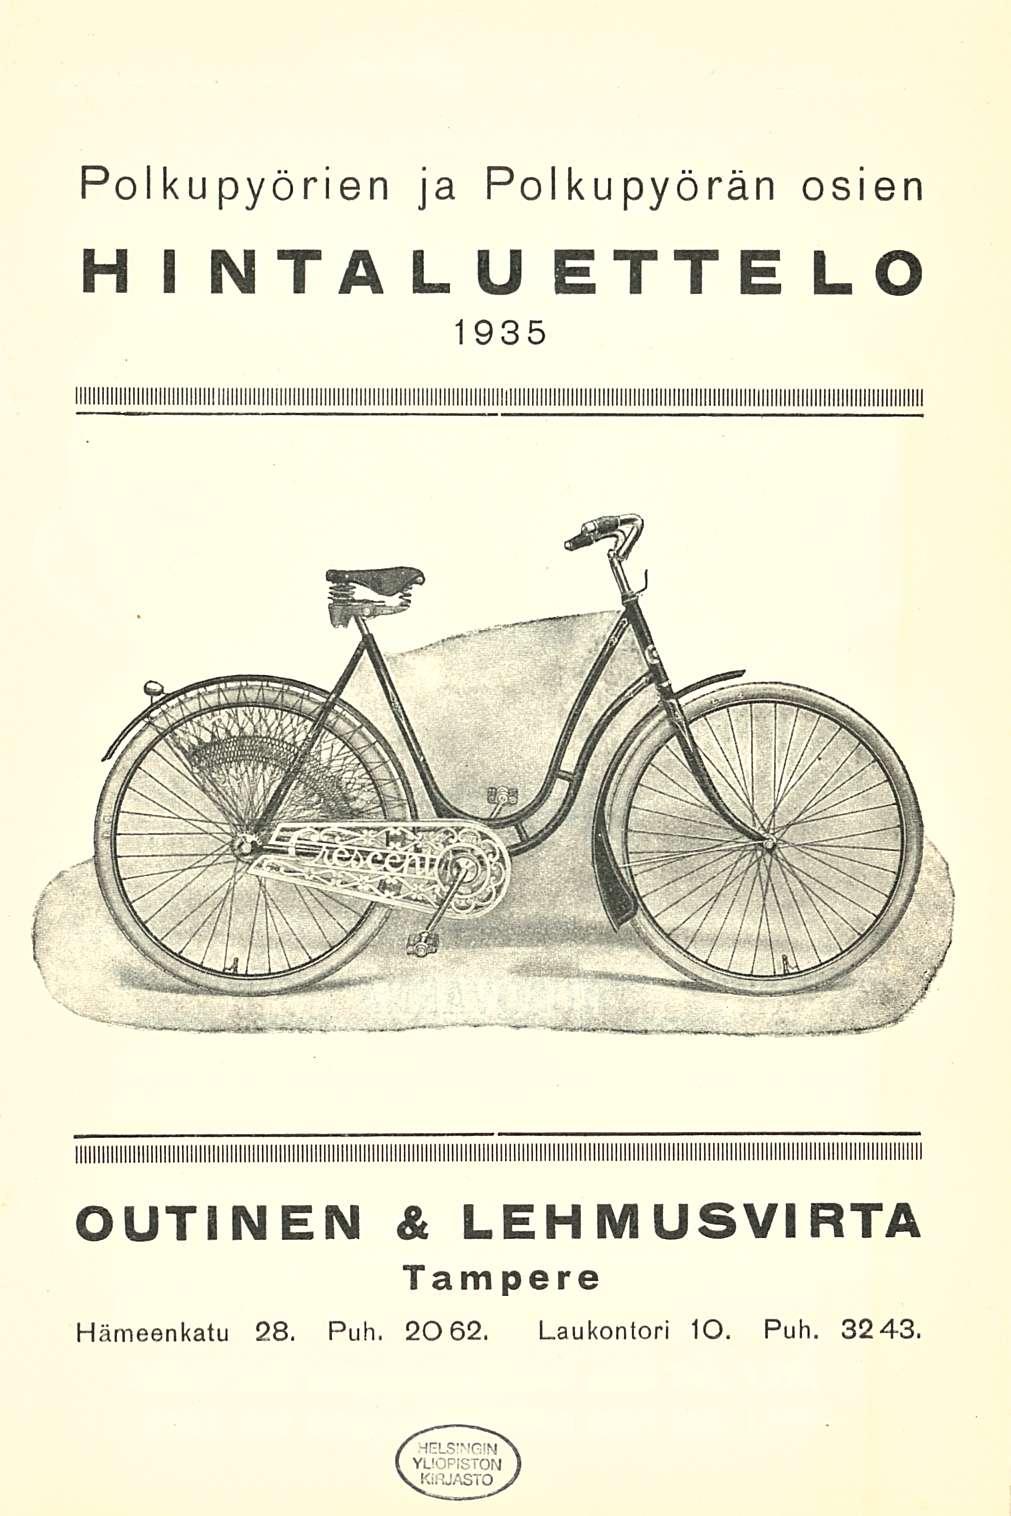 Polkupyörien ja polkupyörän osien hintaluettelo 1935